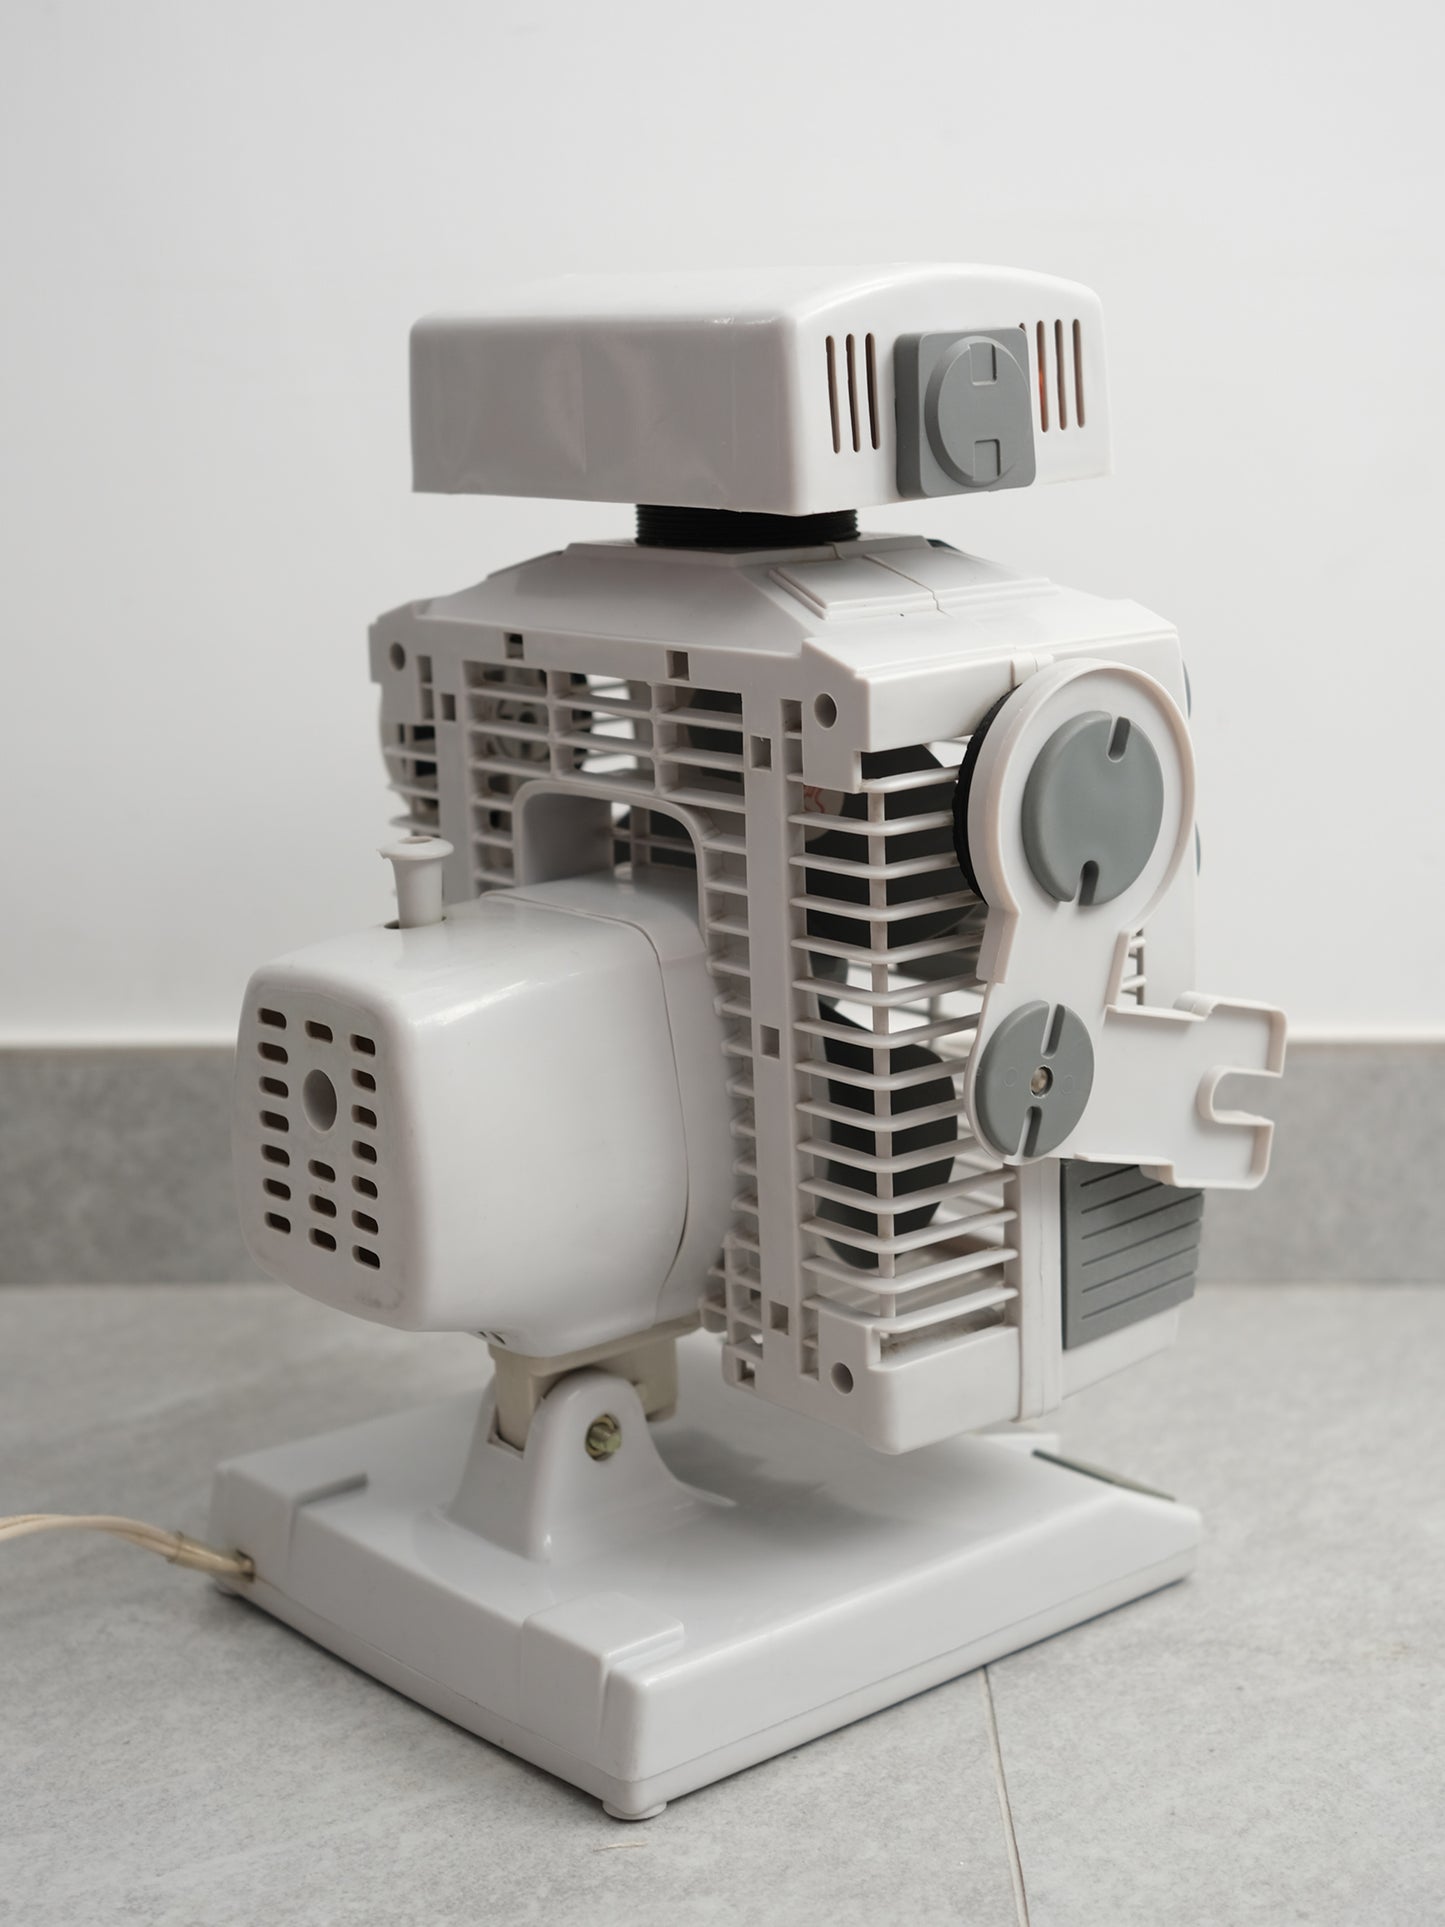 昭和 Beauty 80's 機械人型 三葉 兩段風速調節 電風扇 Robot Electric fan